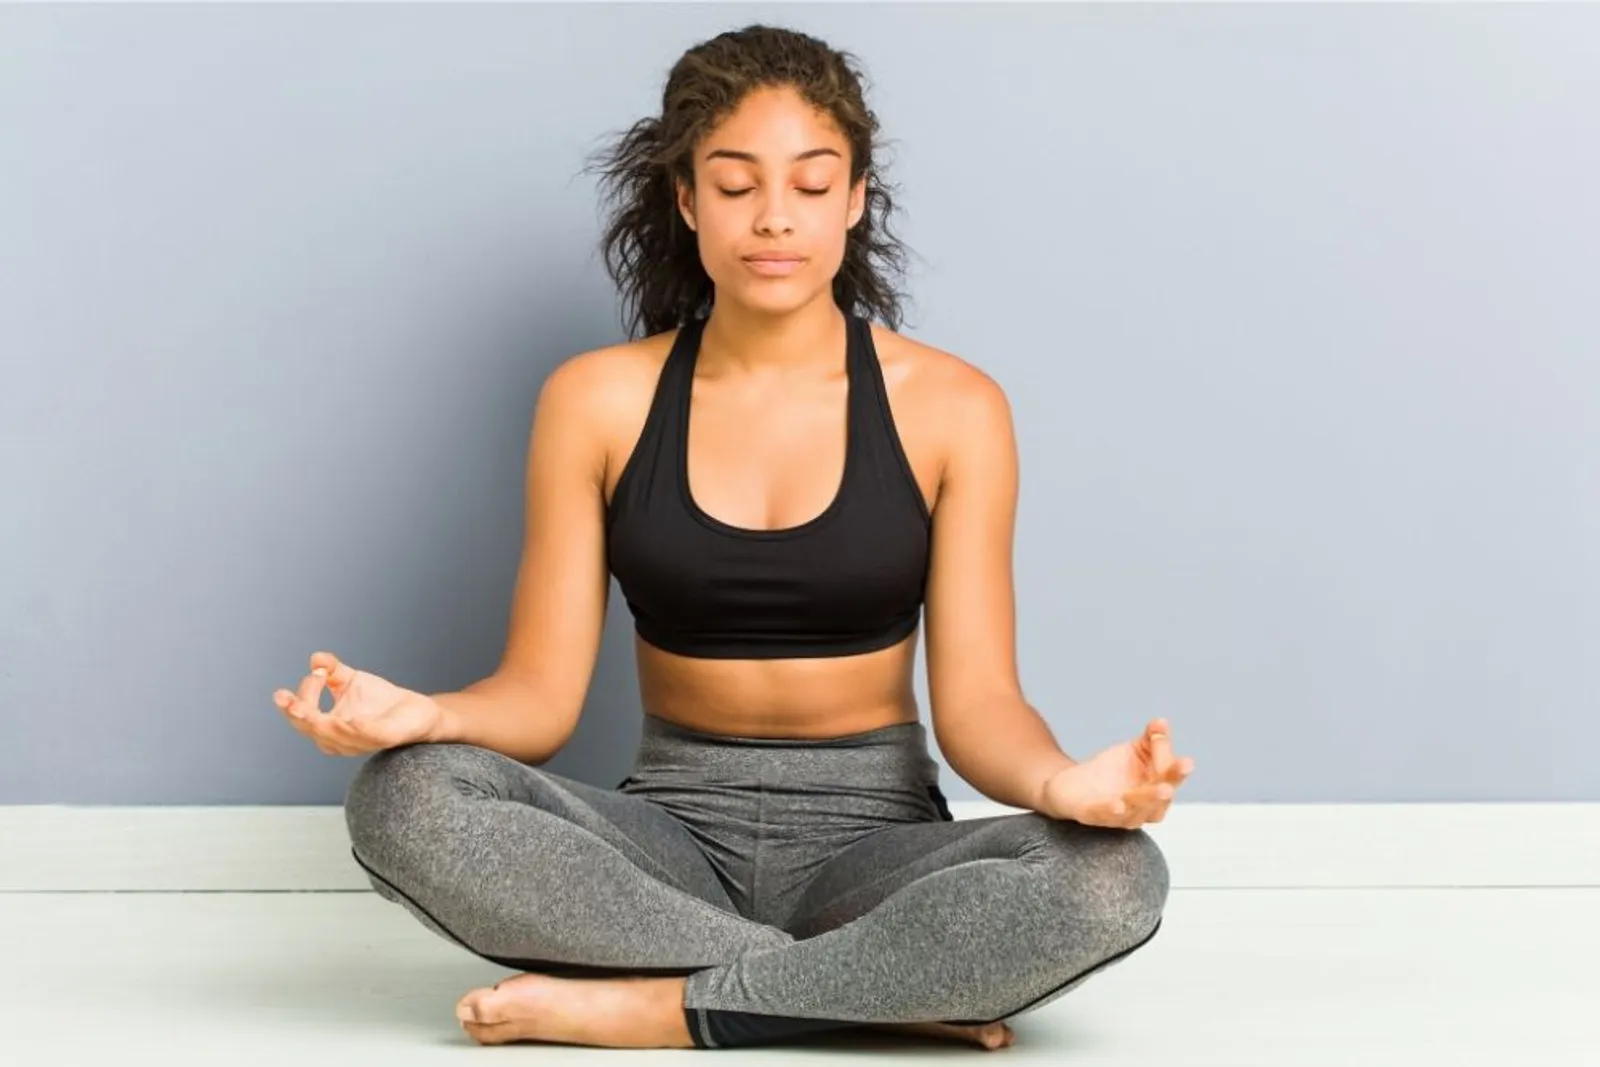 Sebelum Mencoba, Simak Dulu 5 Hal Mengenai Meditasi Ini Yuk!